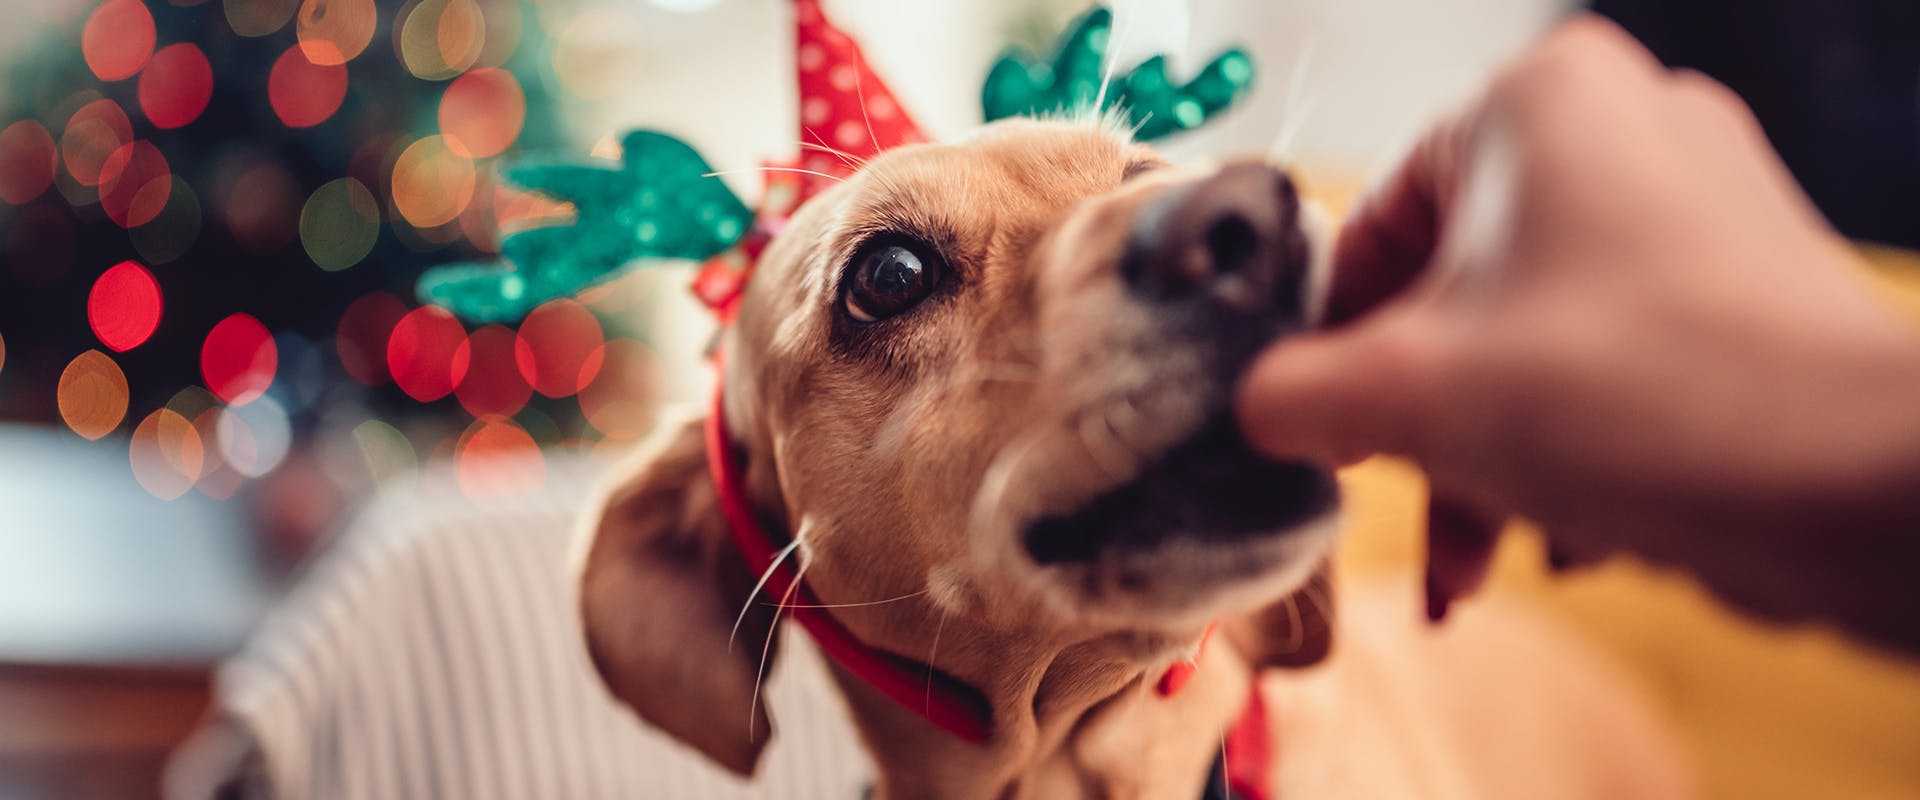 A dachshund wearing a Christmas hat feeding fed a treat